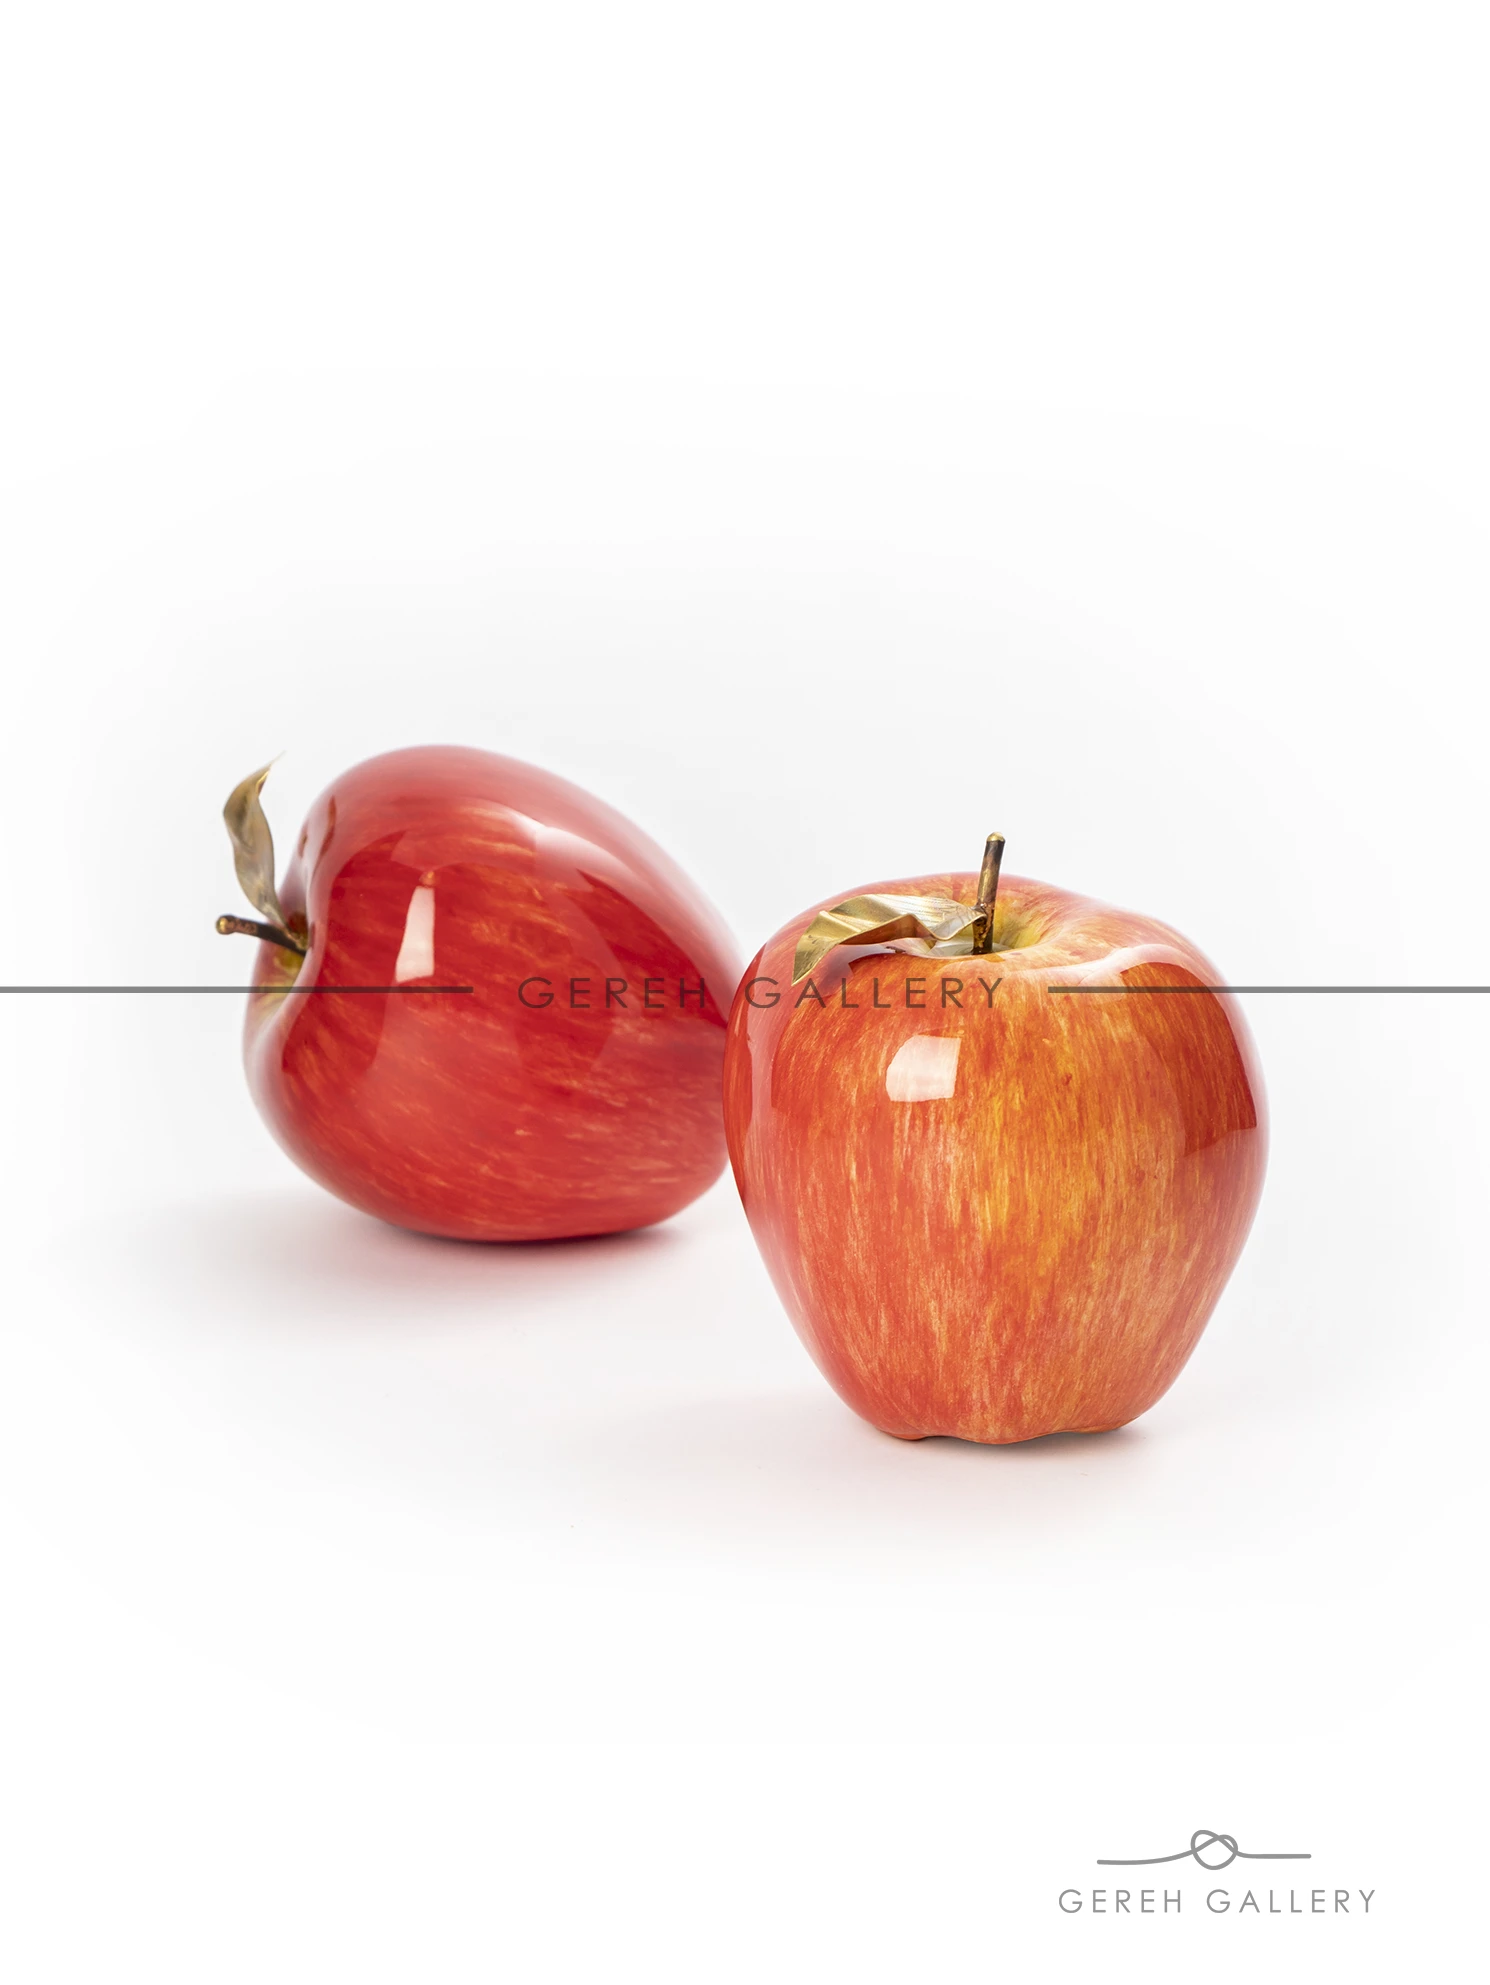 سیب سرامیکی - سیب هفت سین - سیب دکوری - سیب دکوراتیو - سیب قرمز سرامیکی